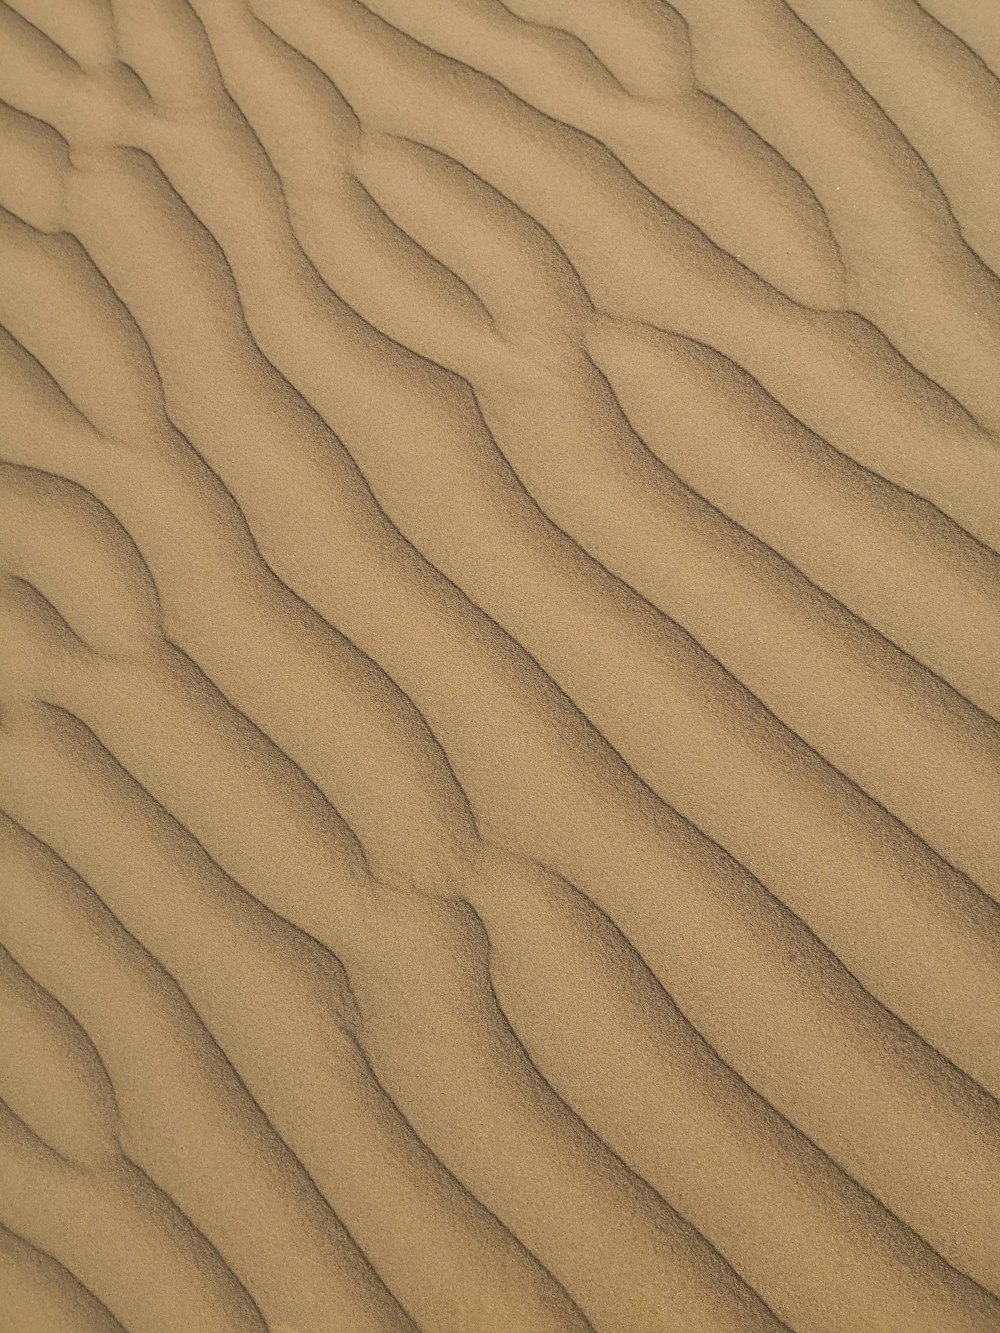 una duna di sabbia con linee ondulate nella sabbia